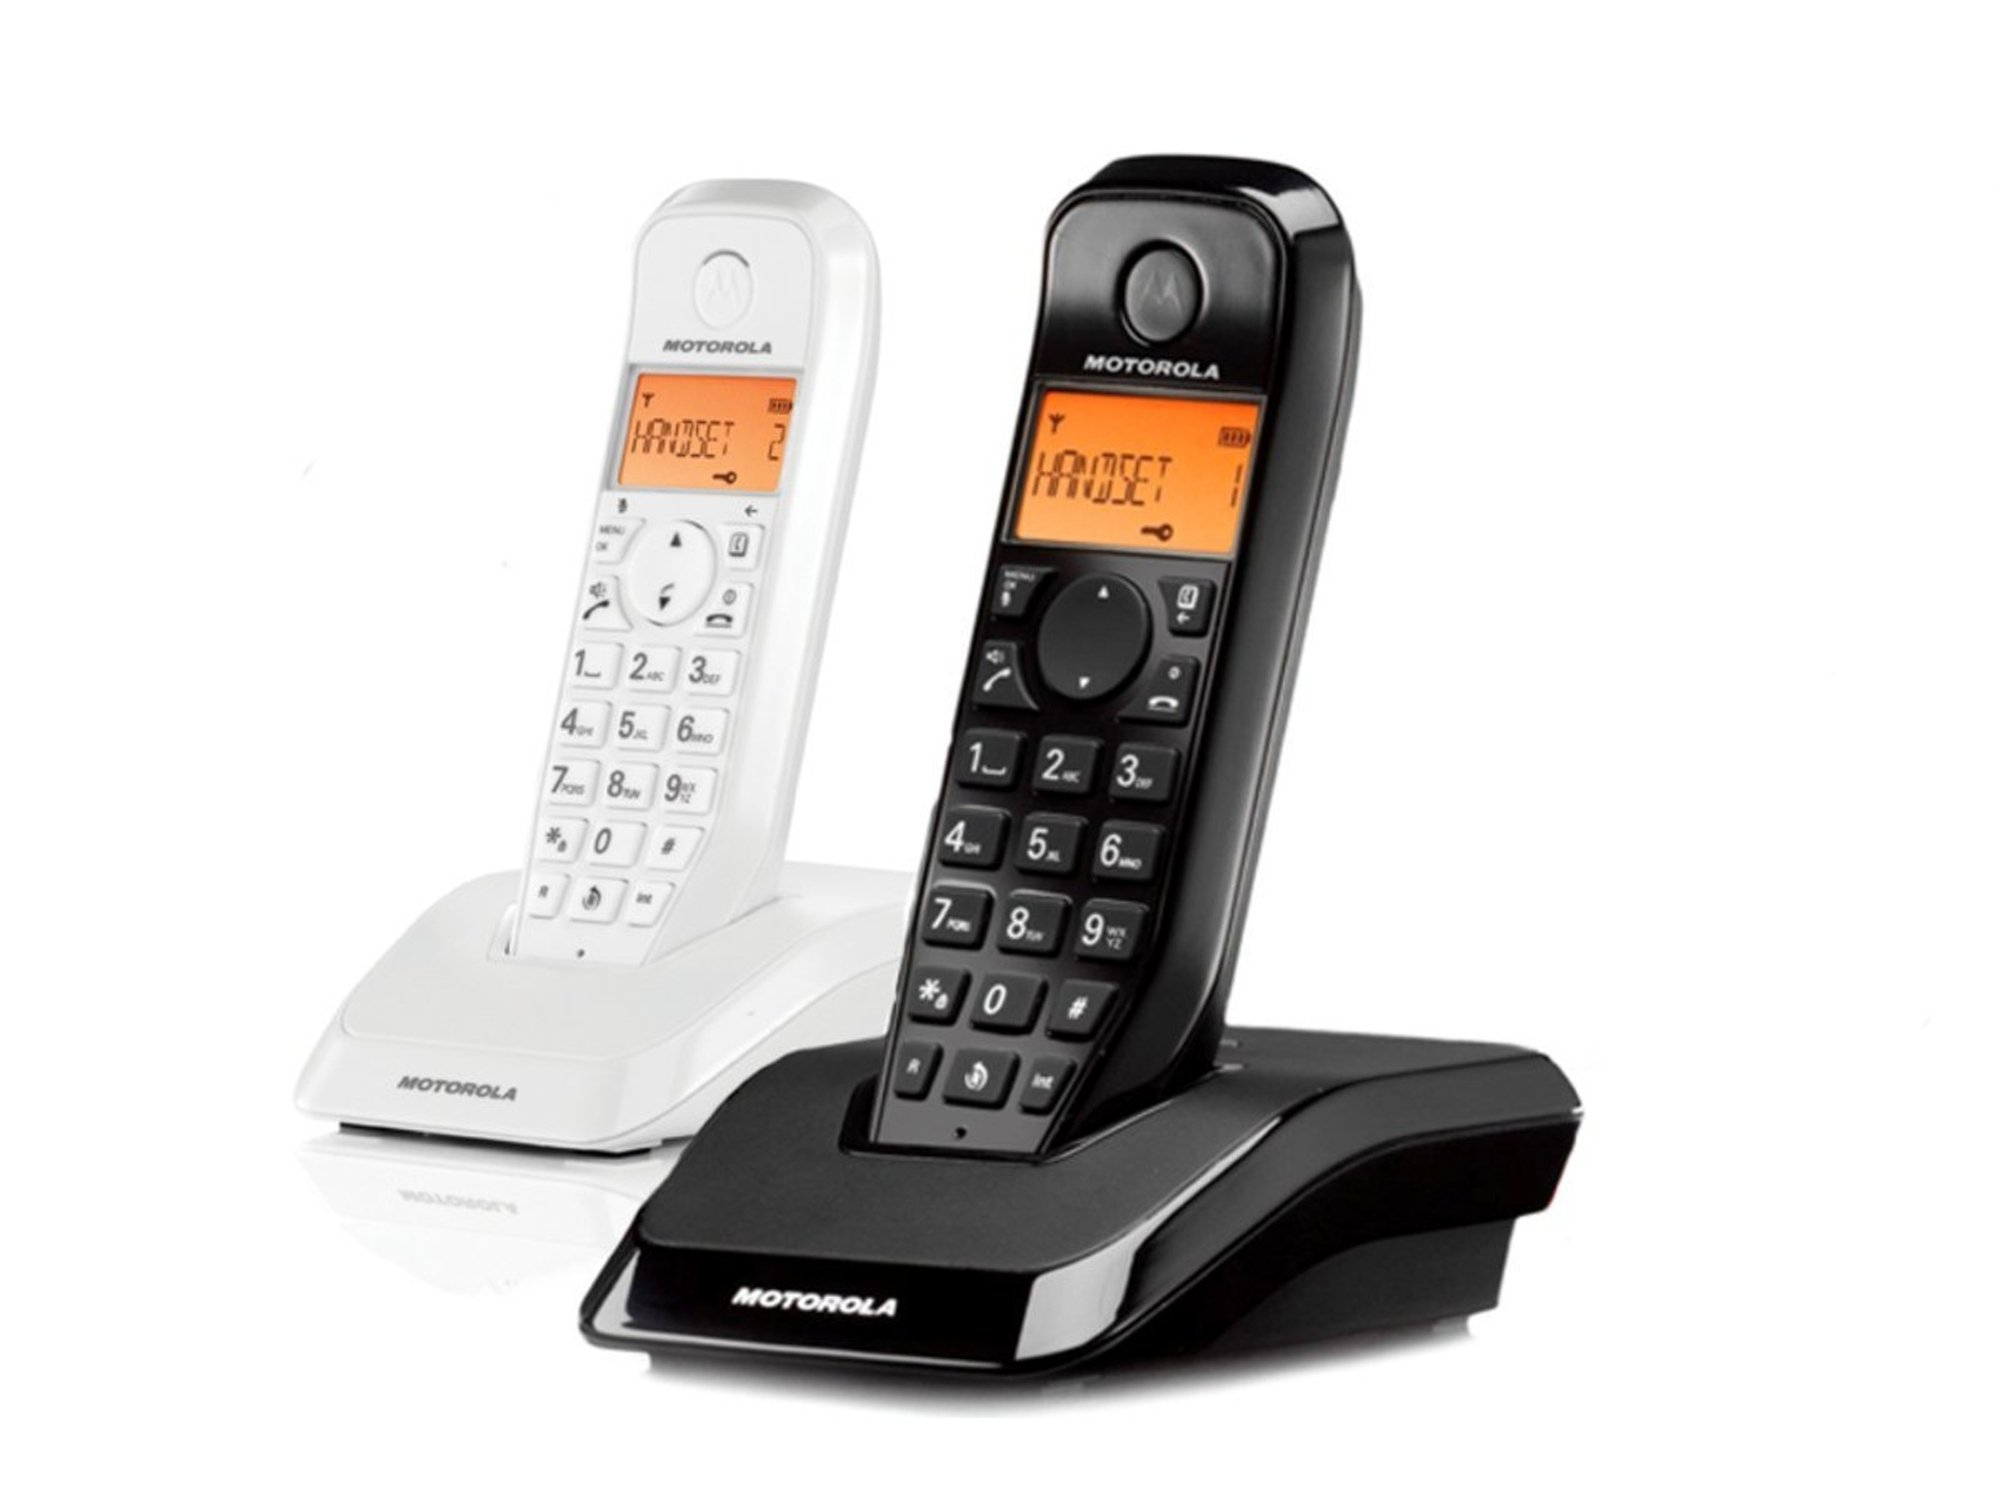 Telefono Inalambrico Motorola s1202 duo blanco y negro manos libres – fijo sencillo de usar contestador una gran